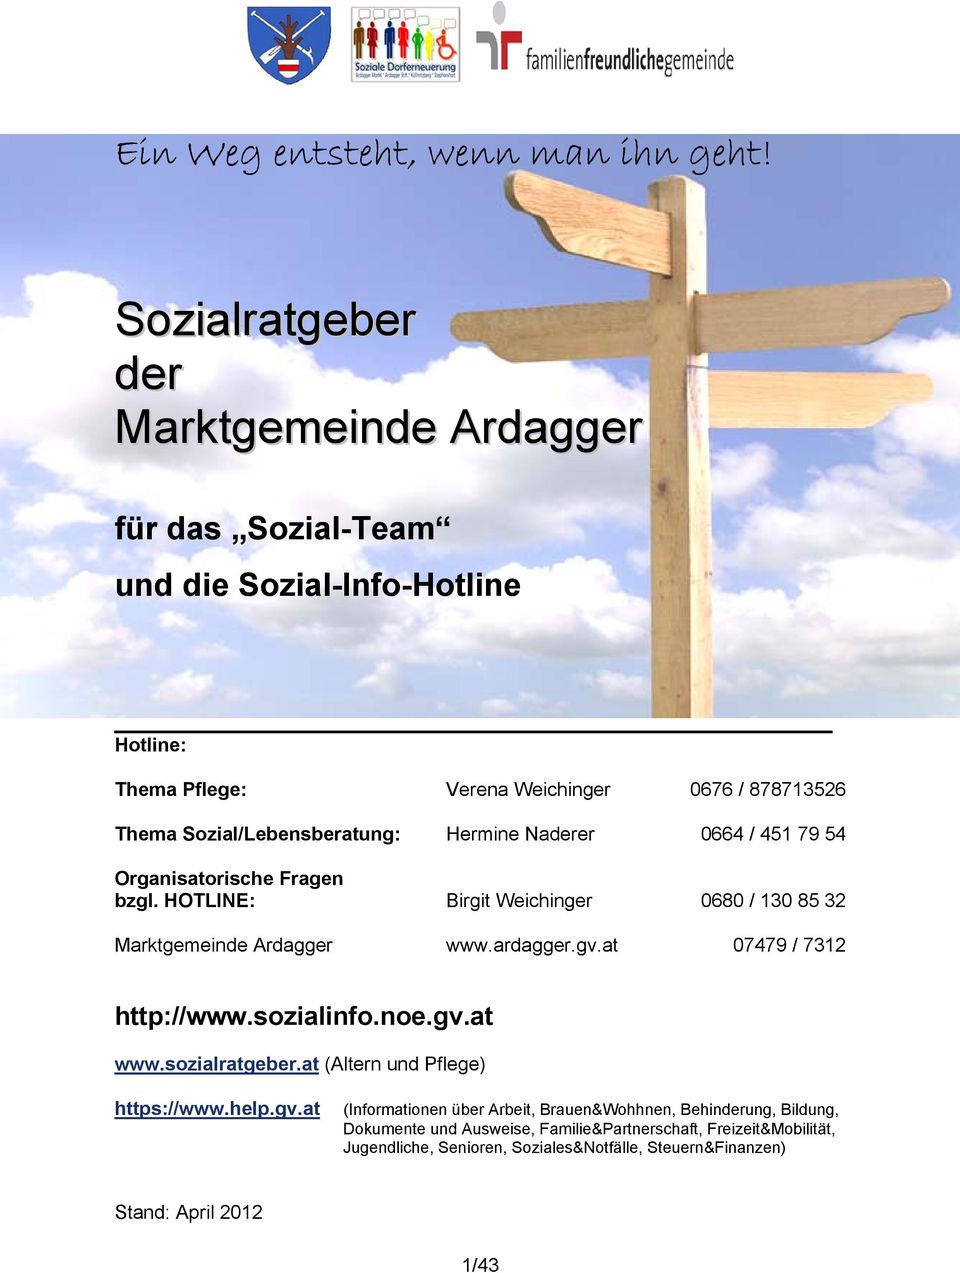 Sozial/Lebensberatung: Hermine Naderer 0664 / 451 79 54 Organisatorische Fragen bzgl. HOTLINE: Birgit Weichinger 0680 / 130 85 32 Marktgemeinde Ardagger www.ardagger.gv.